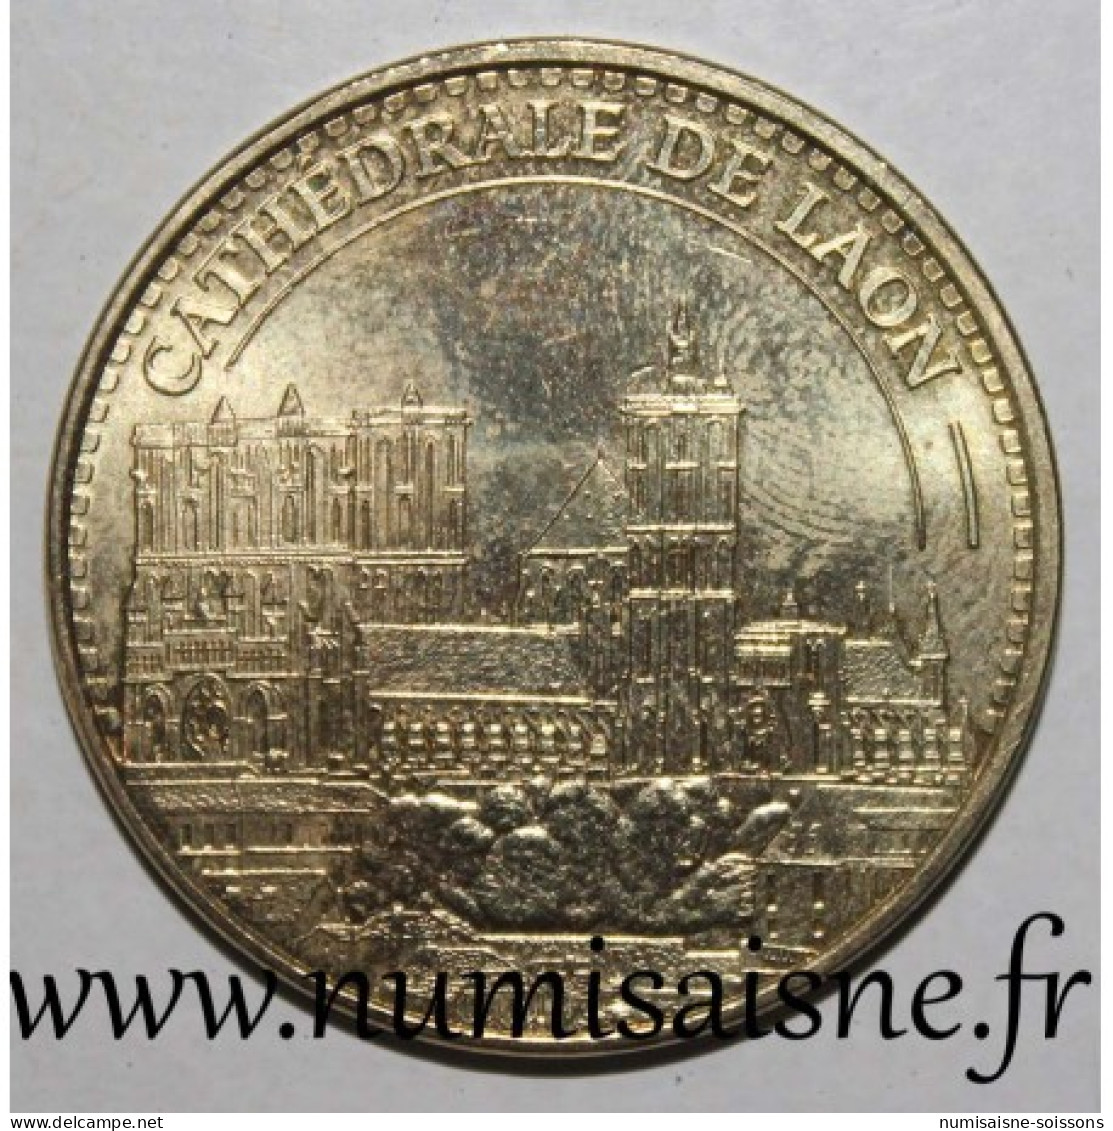 02 - LAON - CATHÉDRALE - Monnaie De Paris - 2015 - 2015